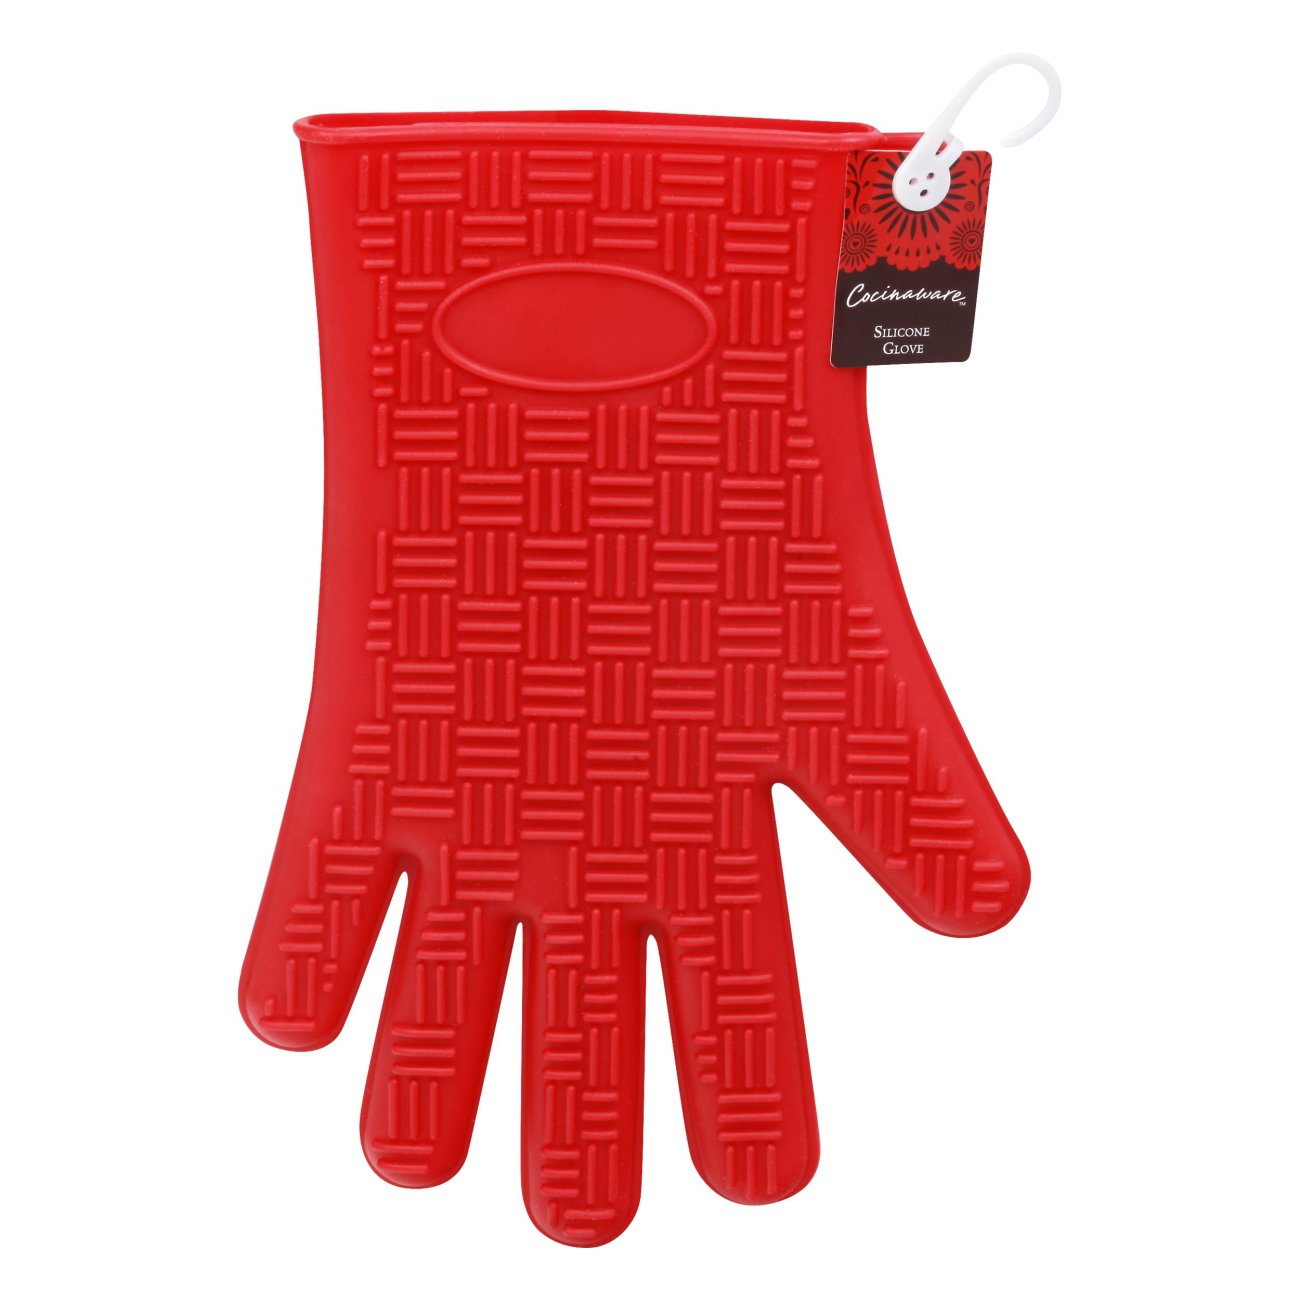 Cocinaware Red Silicone Glove